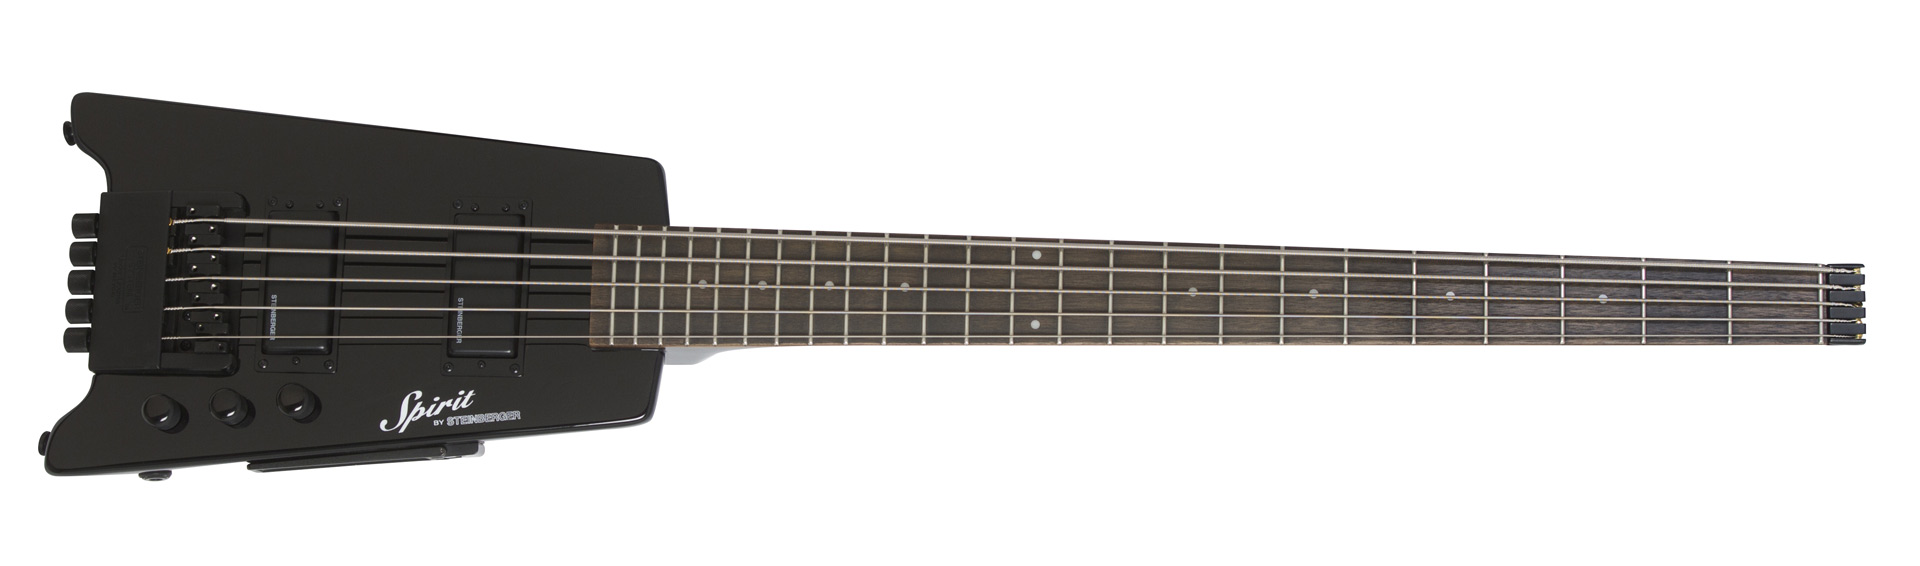 XT-25 Standard Bass